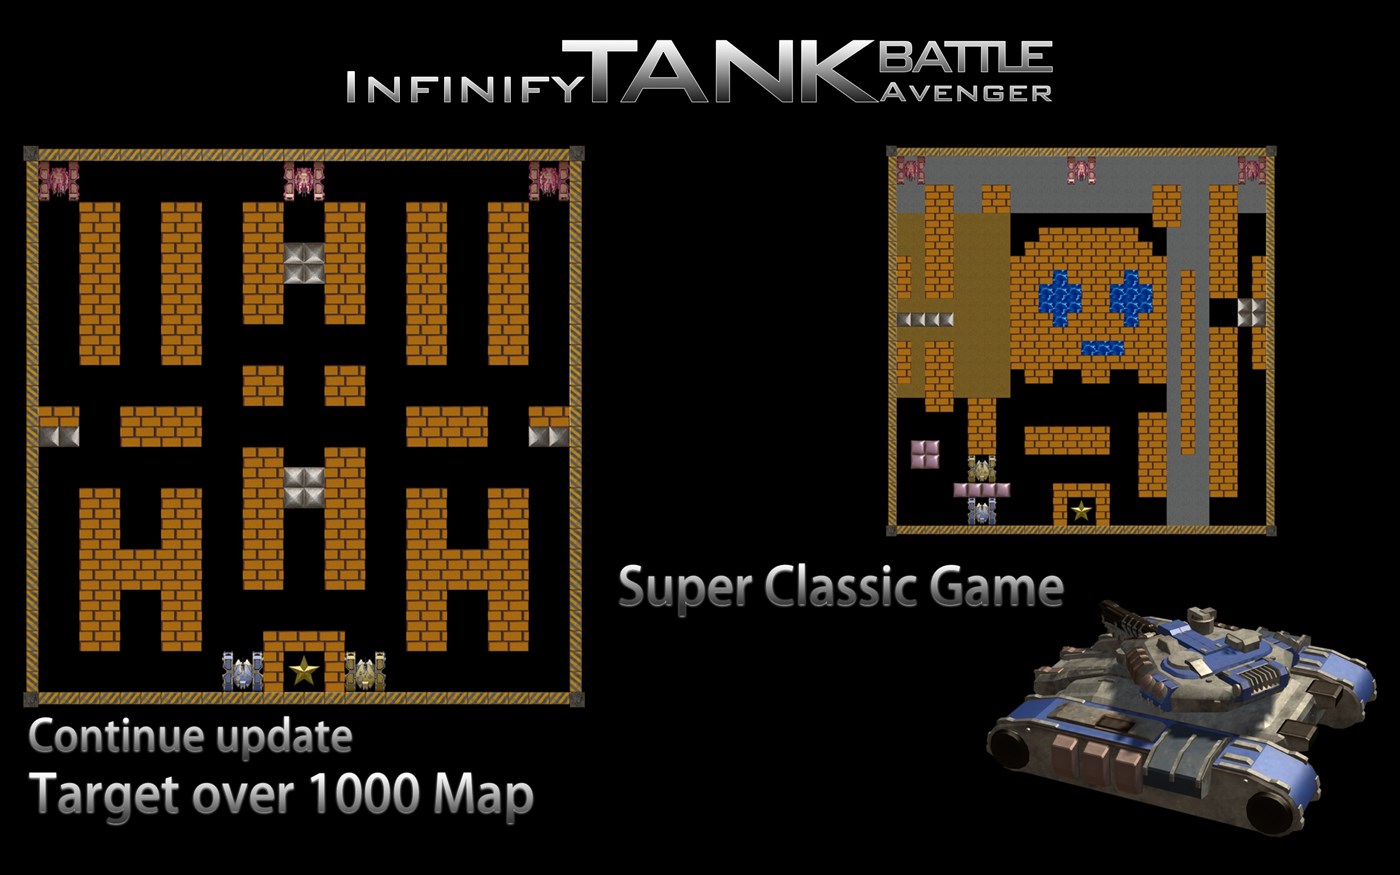 infinite tanks cant register